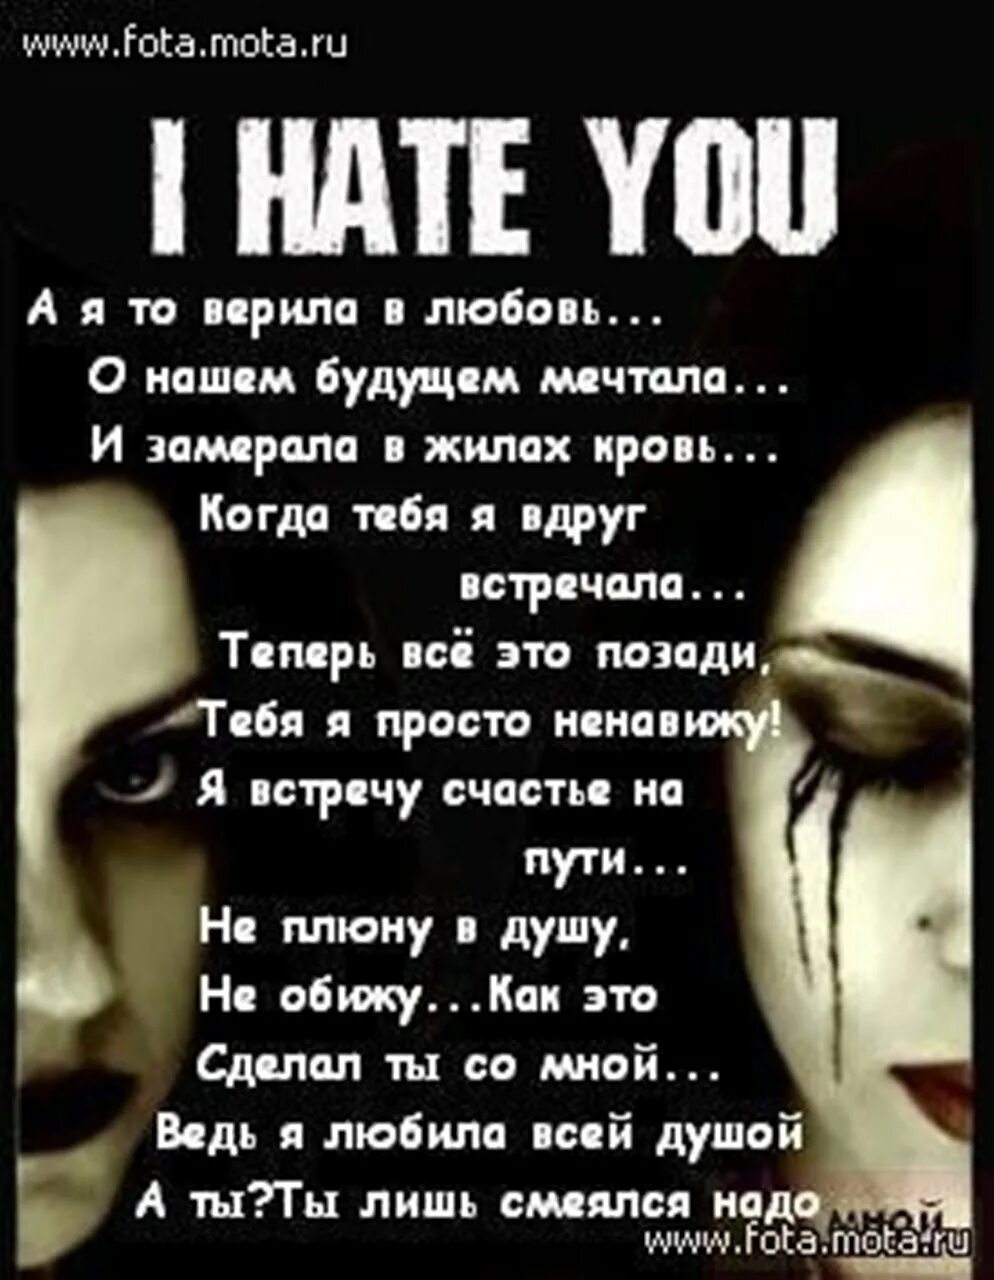 Люблю и презираю. Я тебя ненавижу стихи. Ненавижу стихи. Ненавижу любовь. Люблю тебя и ненавижу стихи.